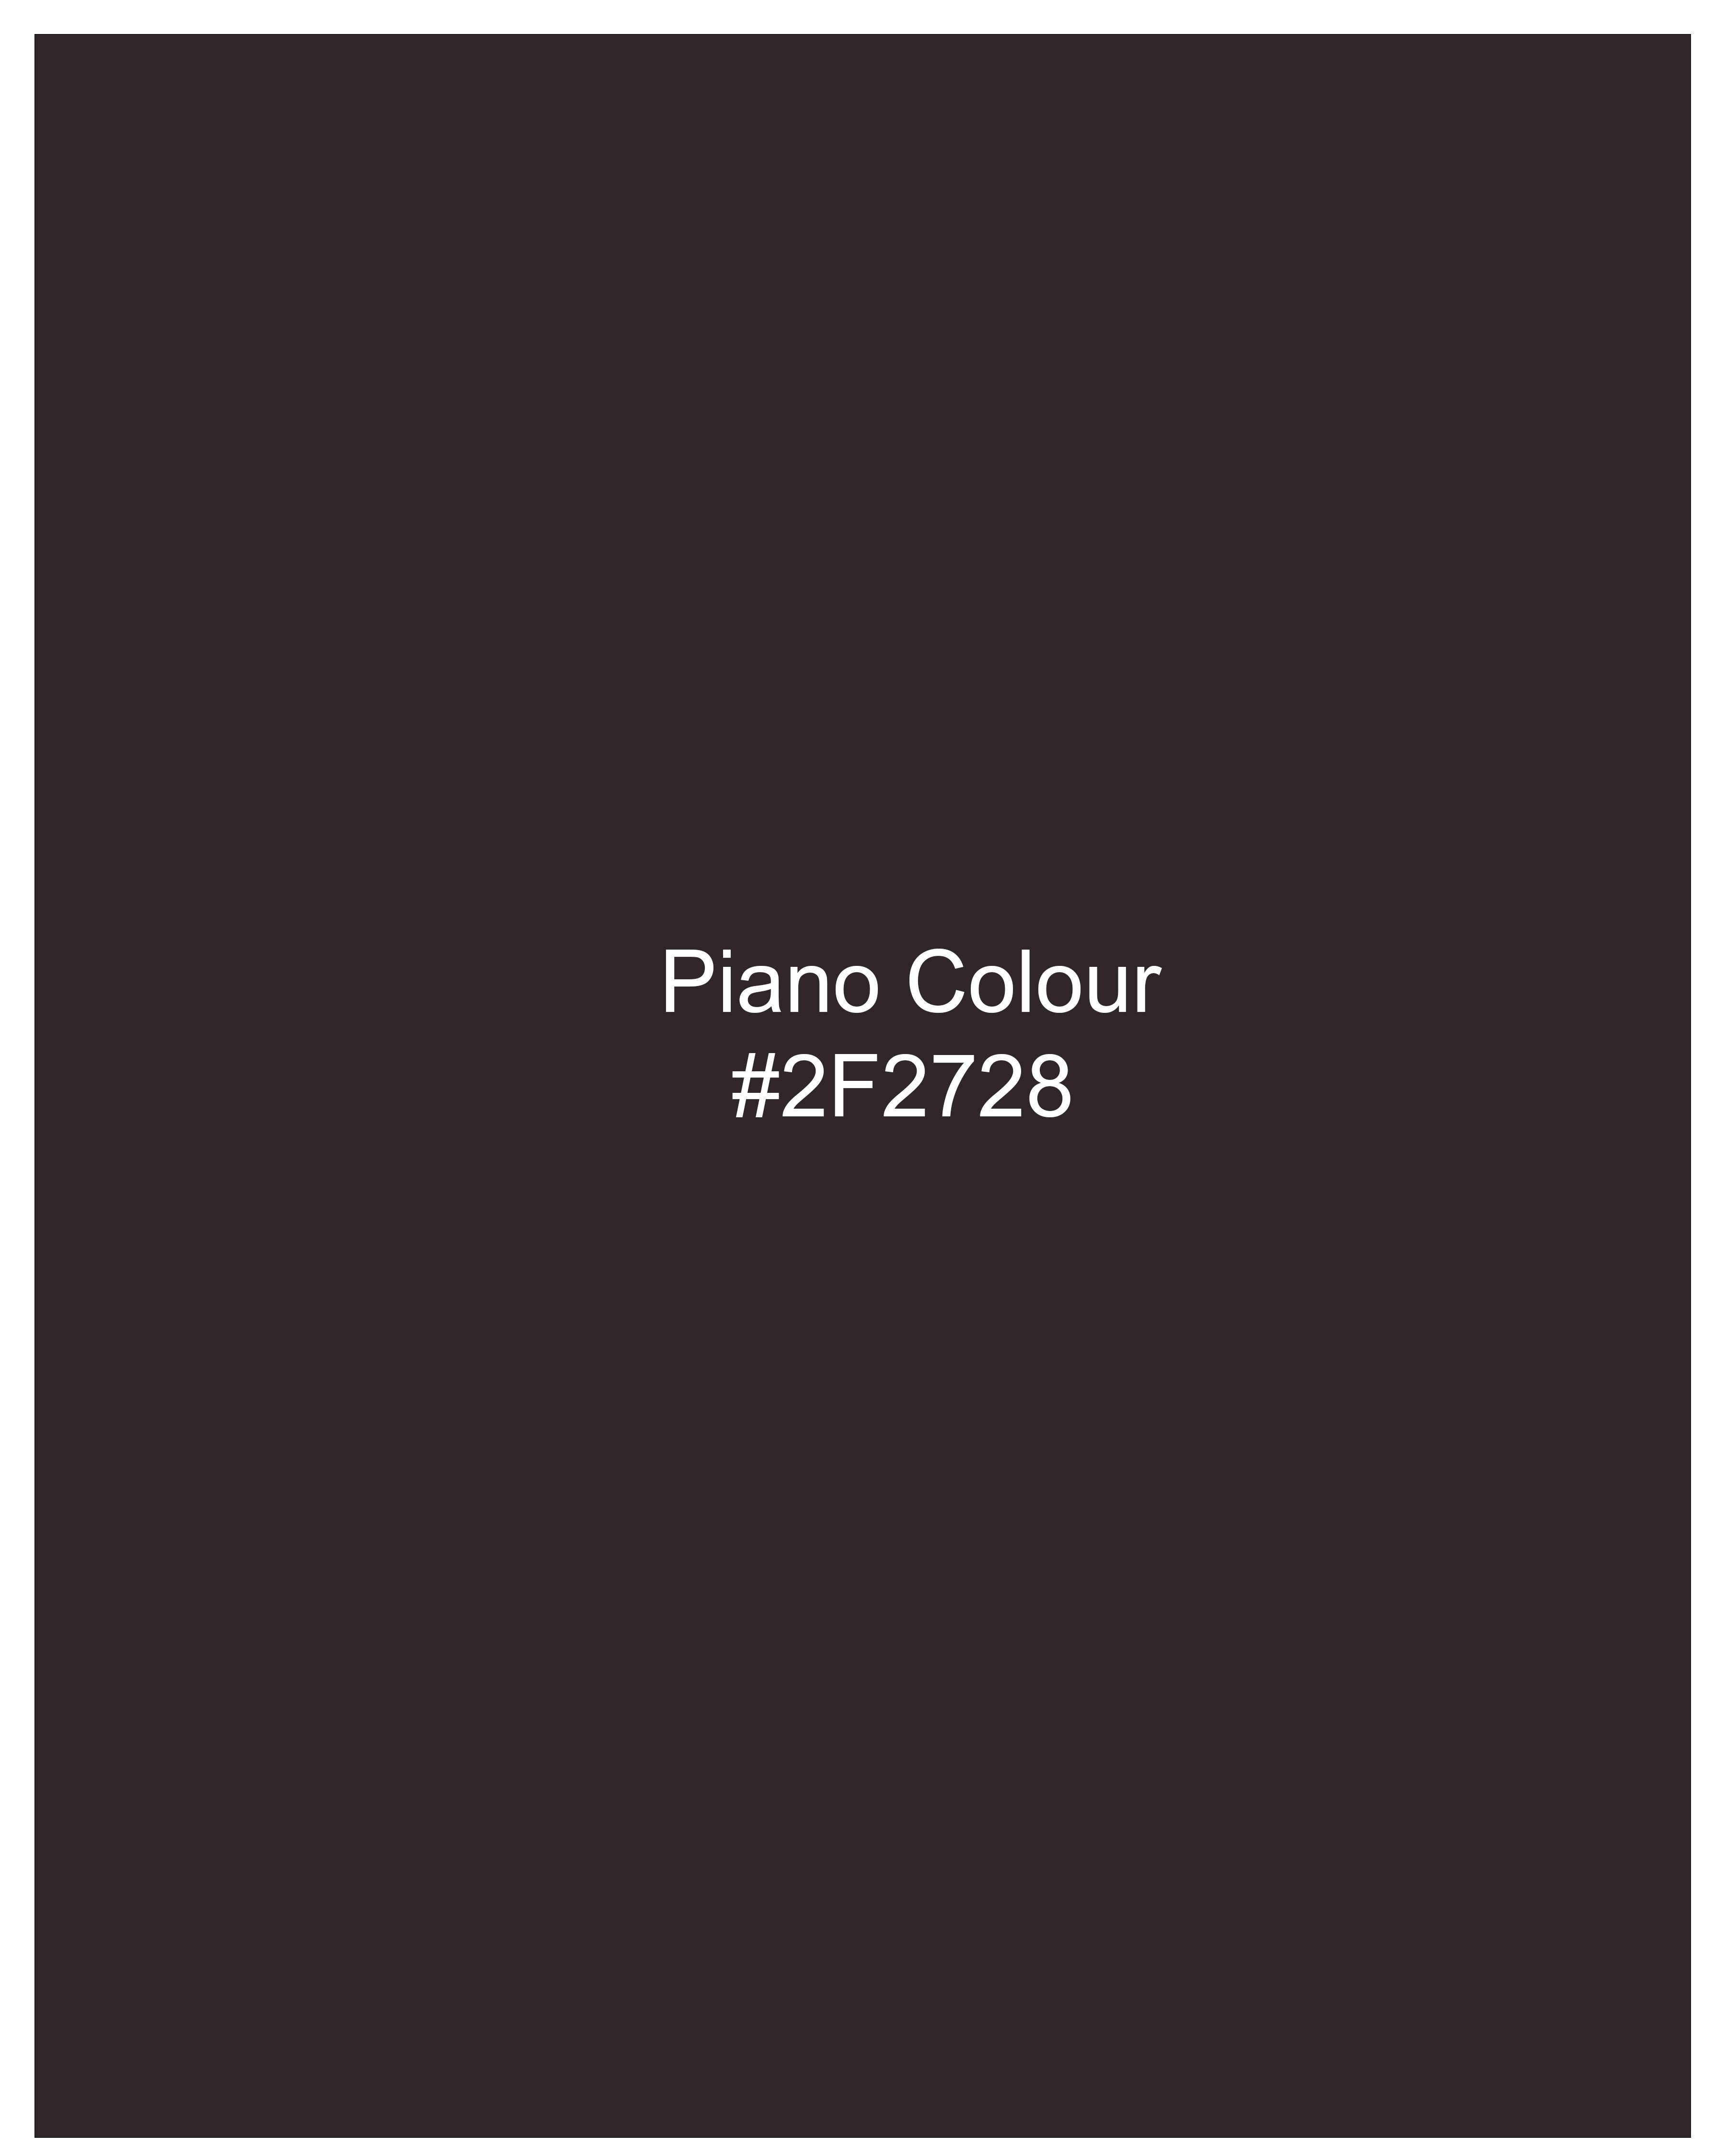 Piano Brown Windowpane Pants T2432-28, T2432-30, T2432-32, T2432-34, T2432-36, T2432-38, T2432-40, T2432-42, T2432-44